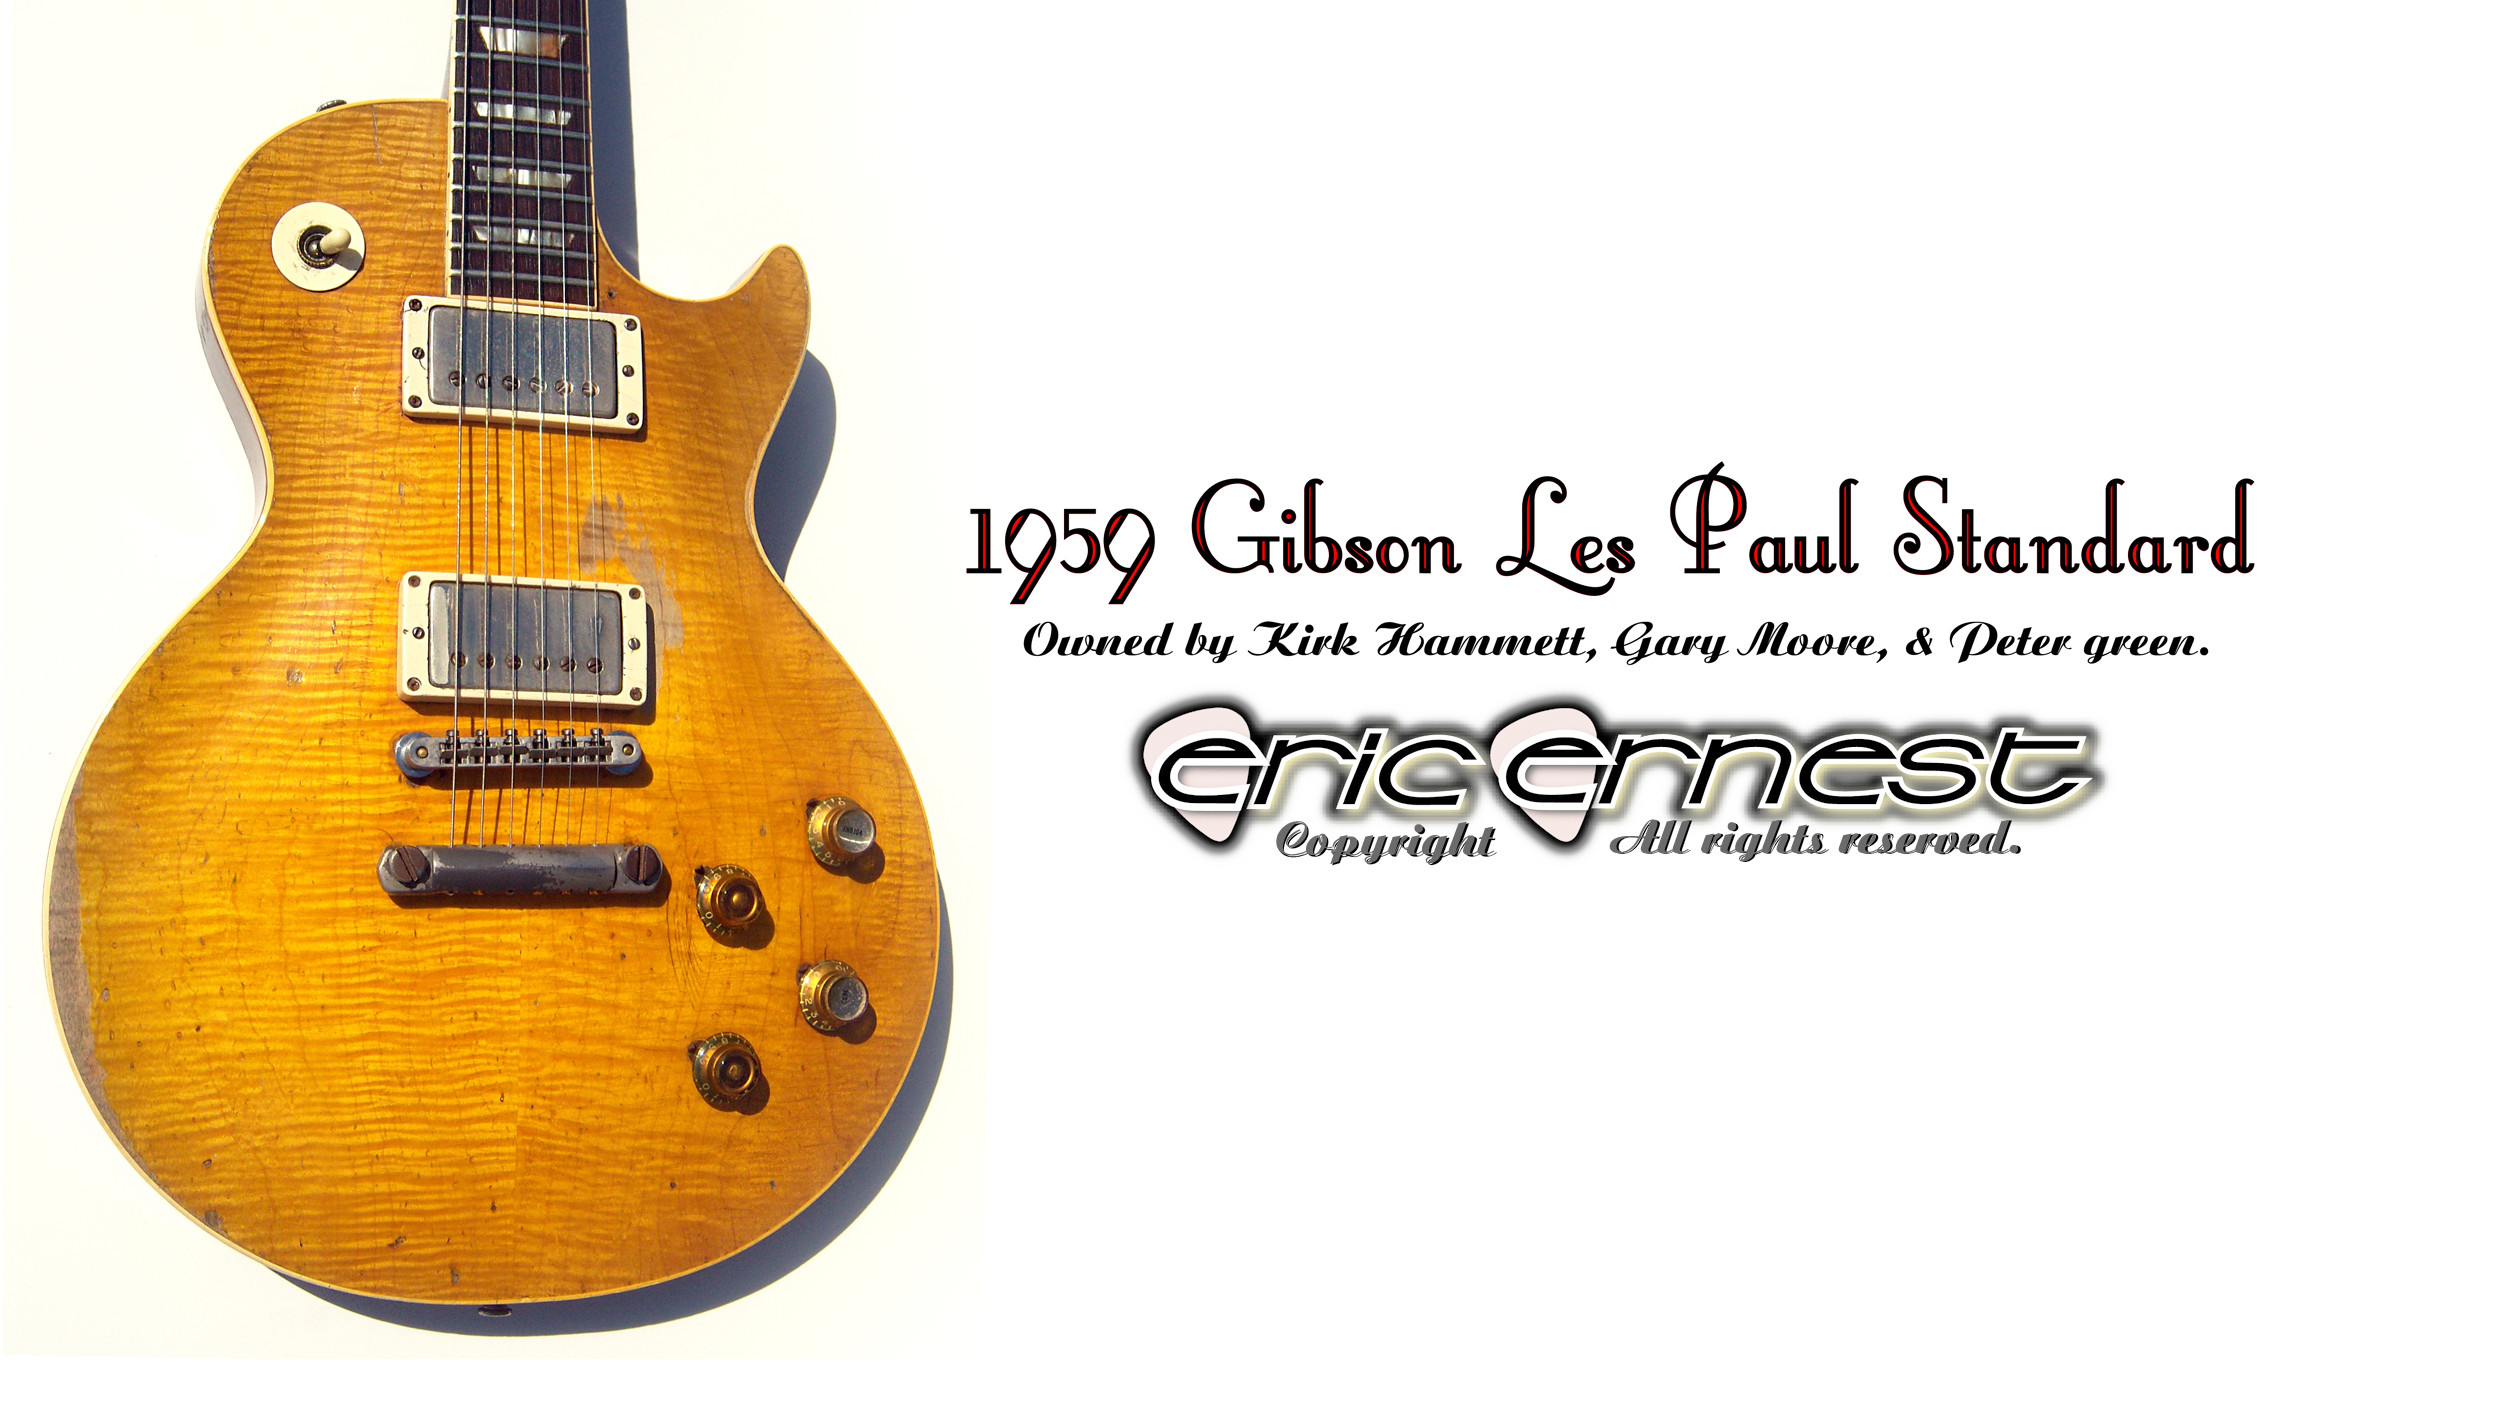 2500x1421 1959 Gibson Les Paul Standard guitar Peter Green Gary Moore Kirk Hammett  Metallica wallpaper. 1400 X 2500.